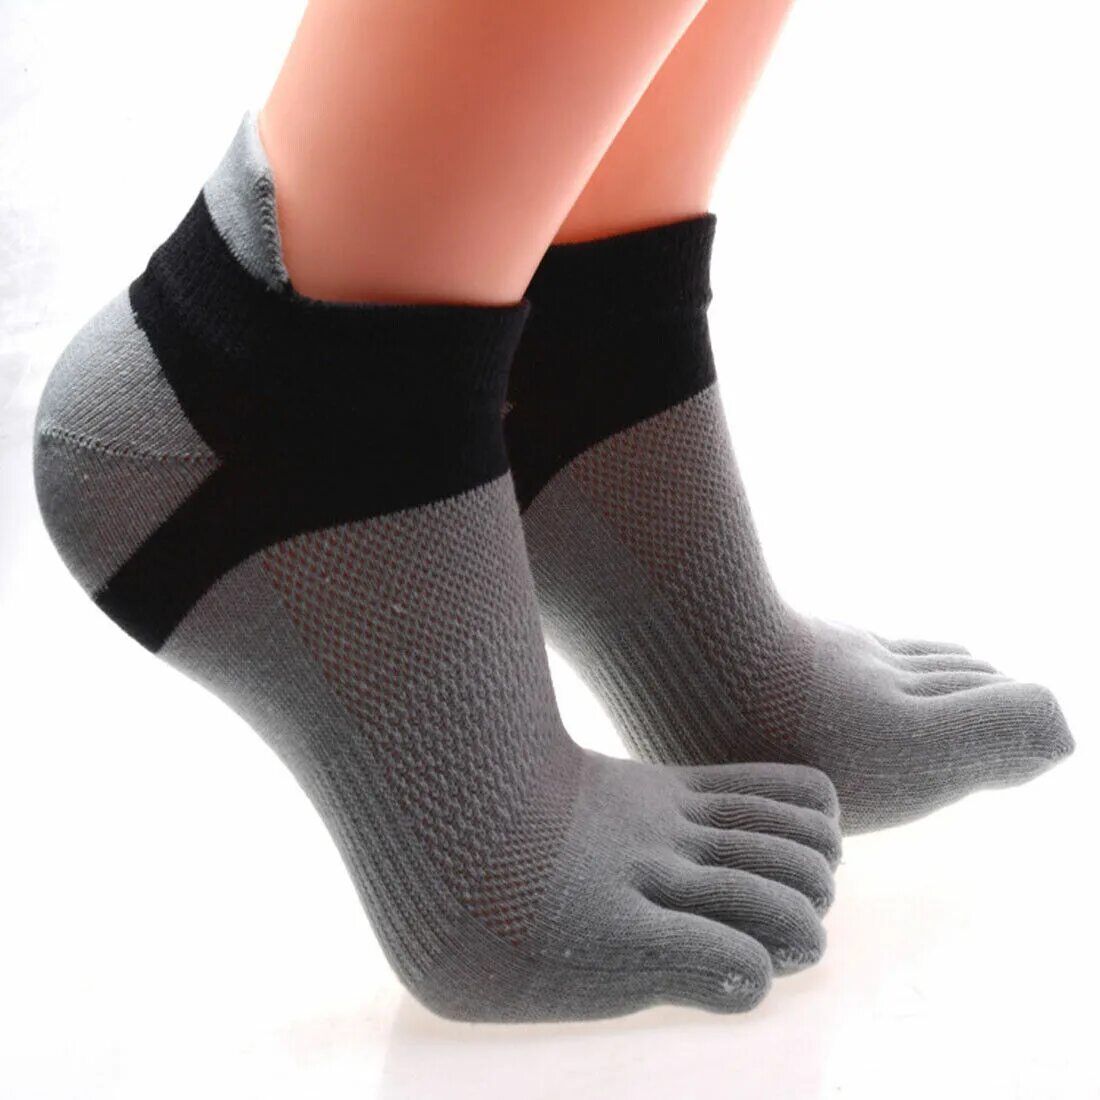 Socks5 купить. Носки 5 пальцев Спортмастер. Носки с пальцами мужские. Спортивные носки с пальцами. Компрессионные носки с пальцами.